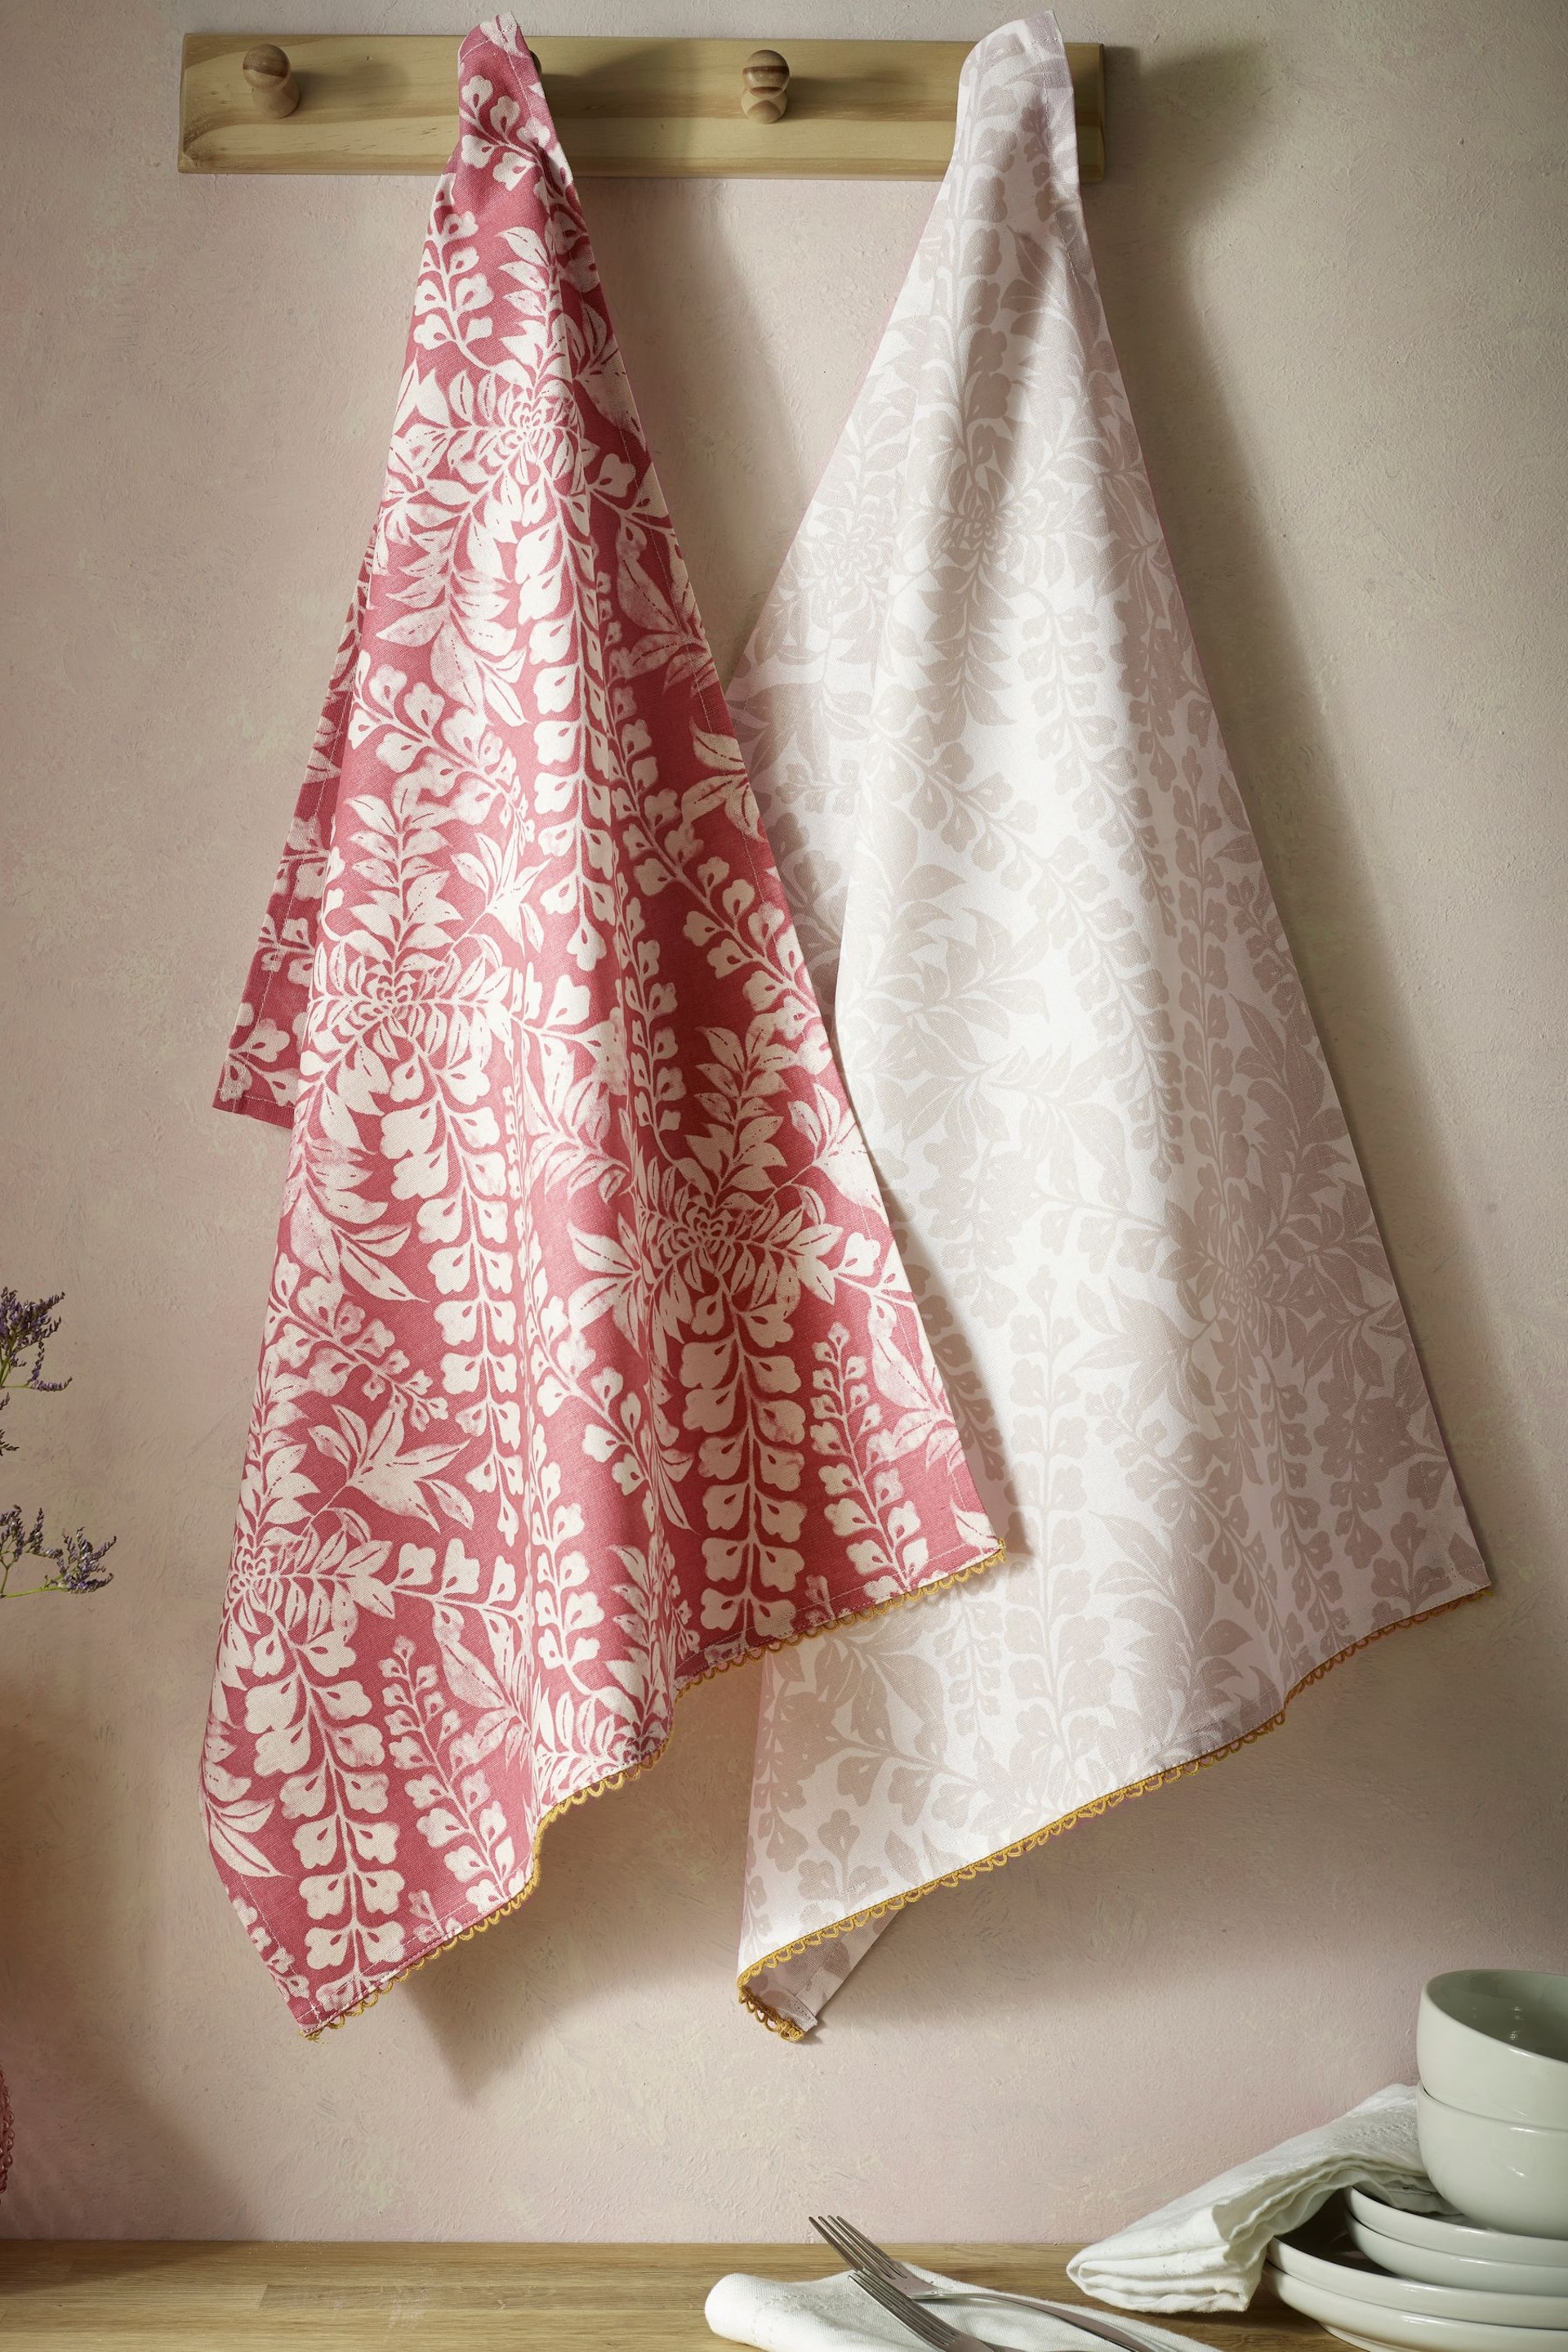 Set of 2 Natural Floral Design Tea Towels - Image 1 of 3